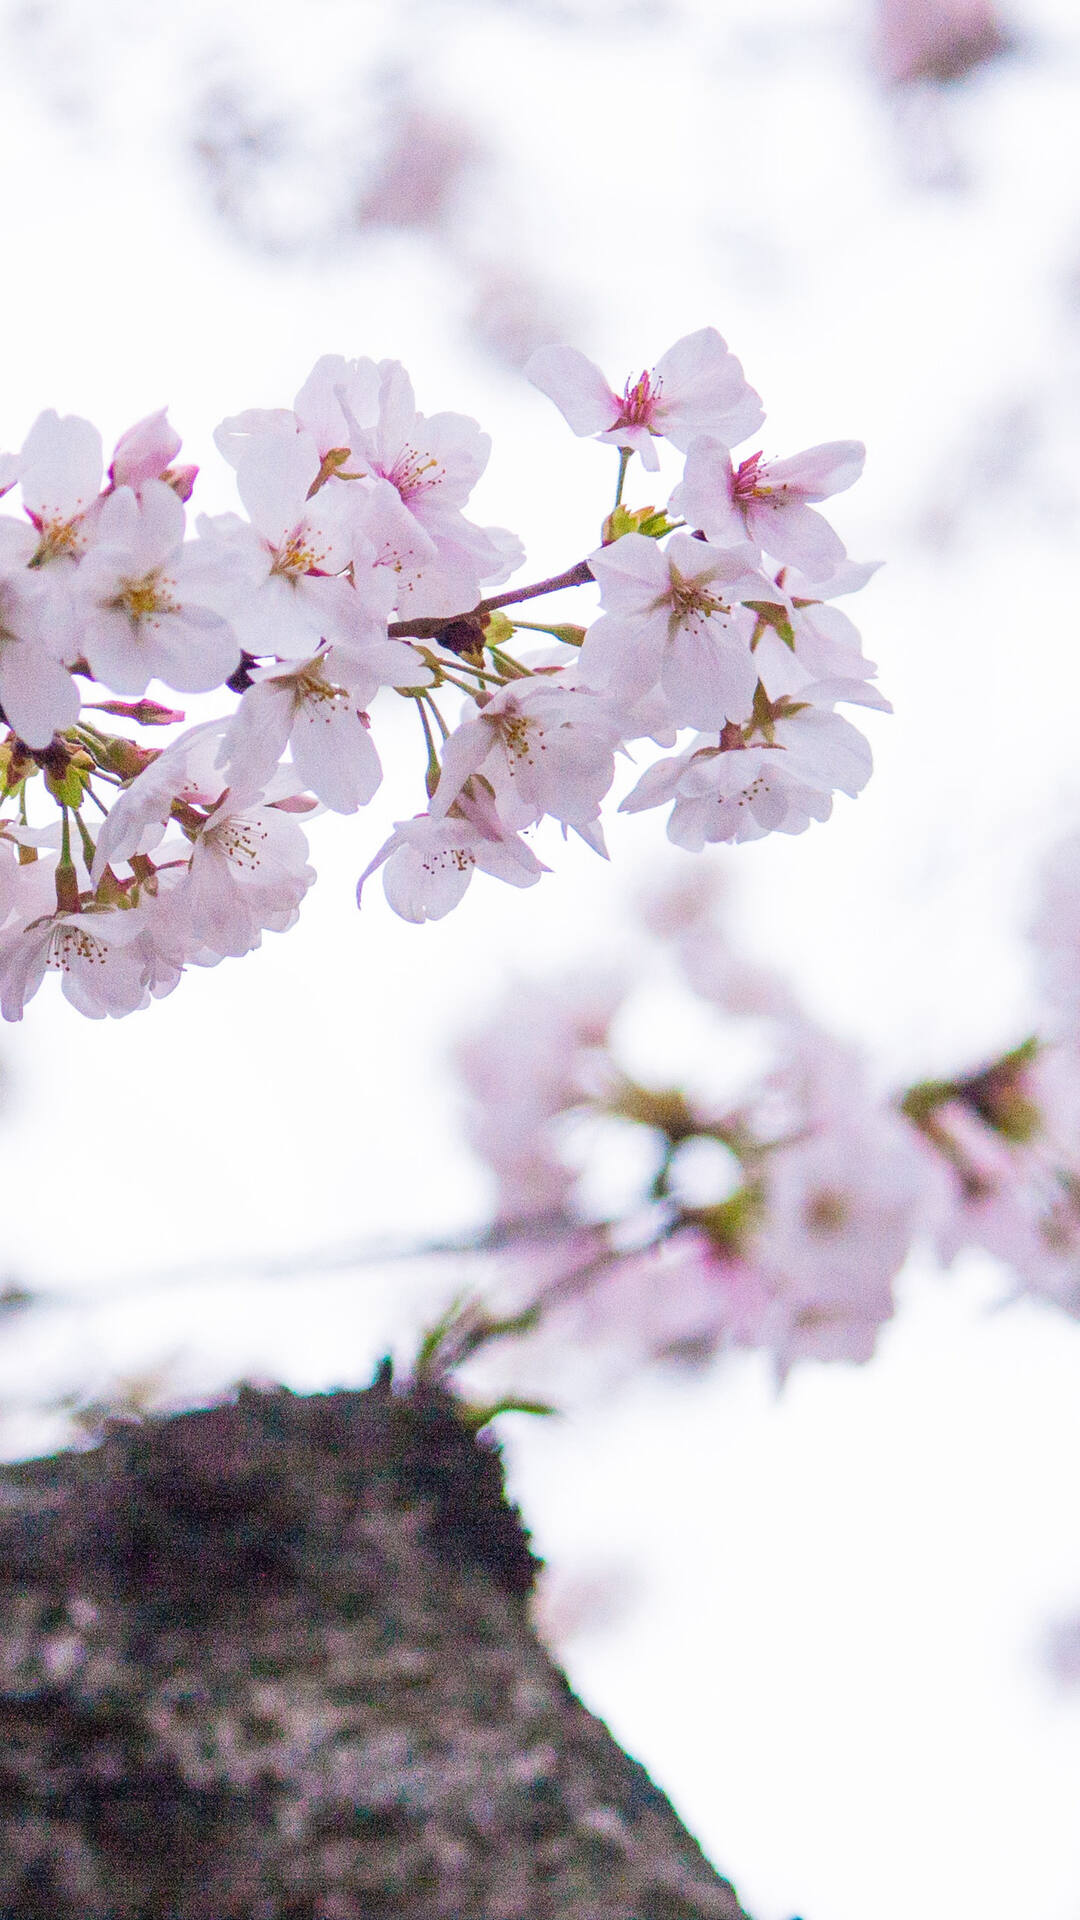 唯美又浪漫的蔷薇科植物樱花的超清摄影手机壁纸套图4